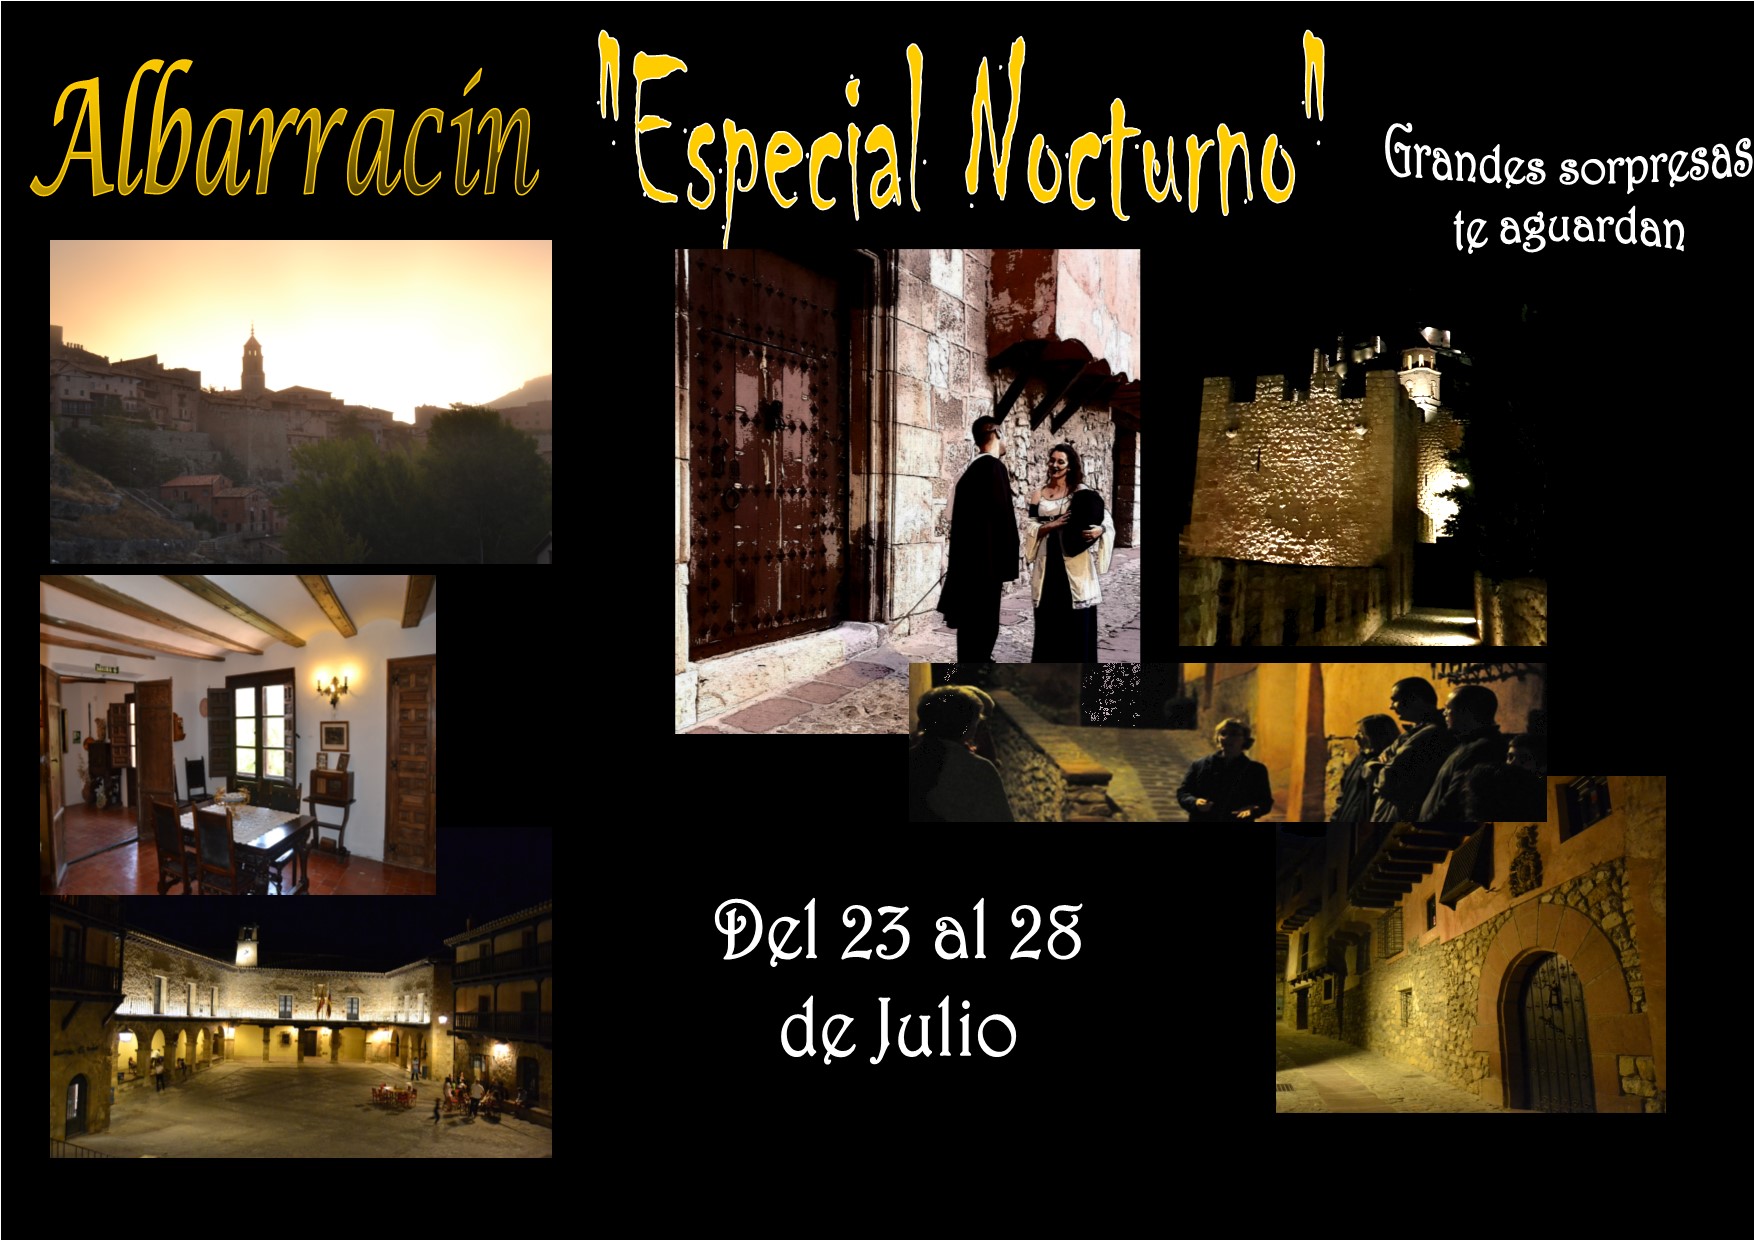 Del 23 al 28 de Julio…Albarracín Especial Nocturno…con grandes y nuevas sorpresas!